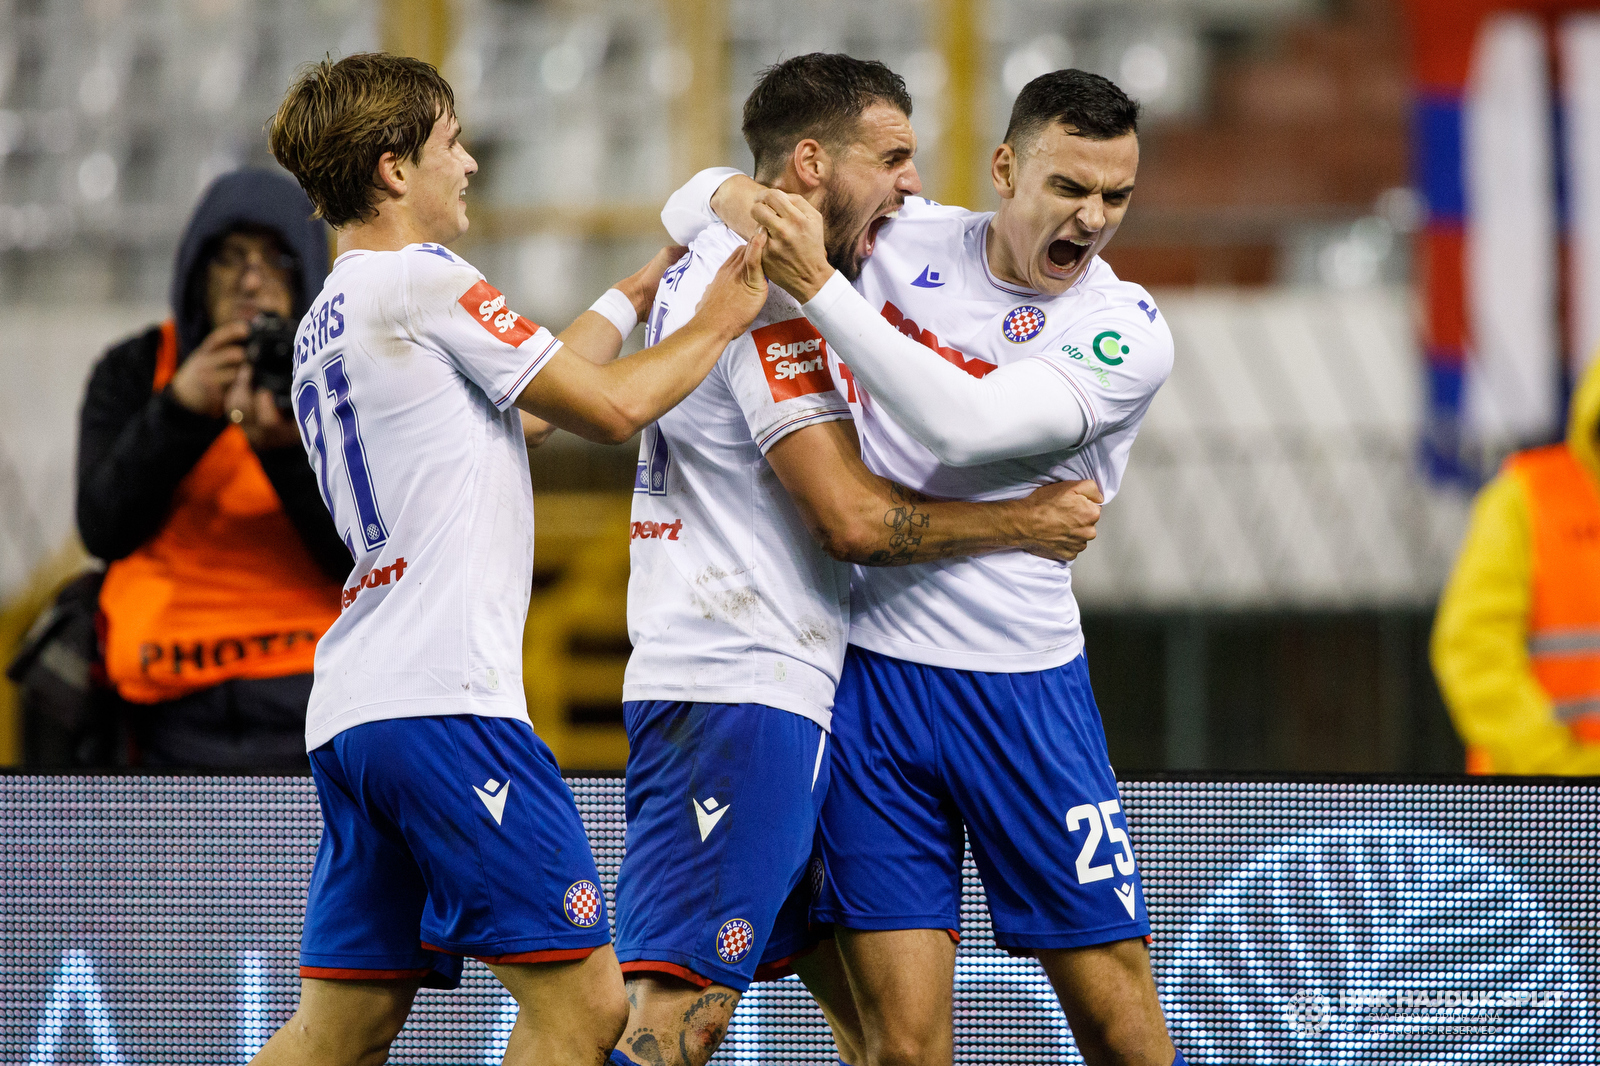 NOGOMET UŽIVO: Hajduk i Varaždin igraju utakmicu 15. kola HNL-a na